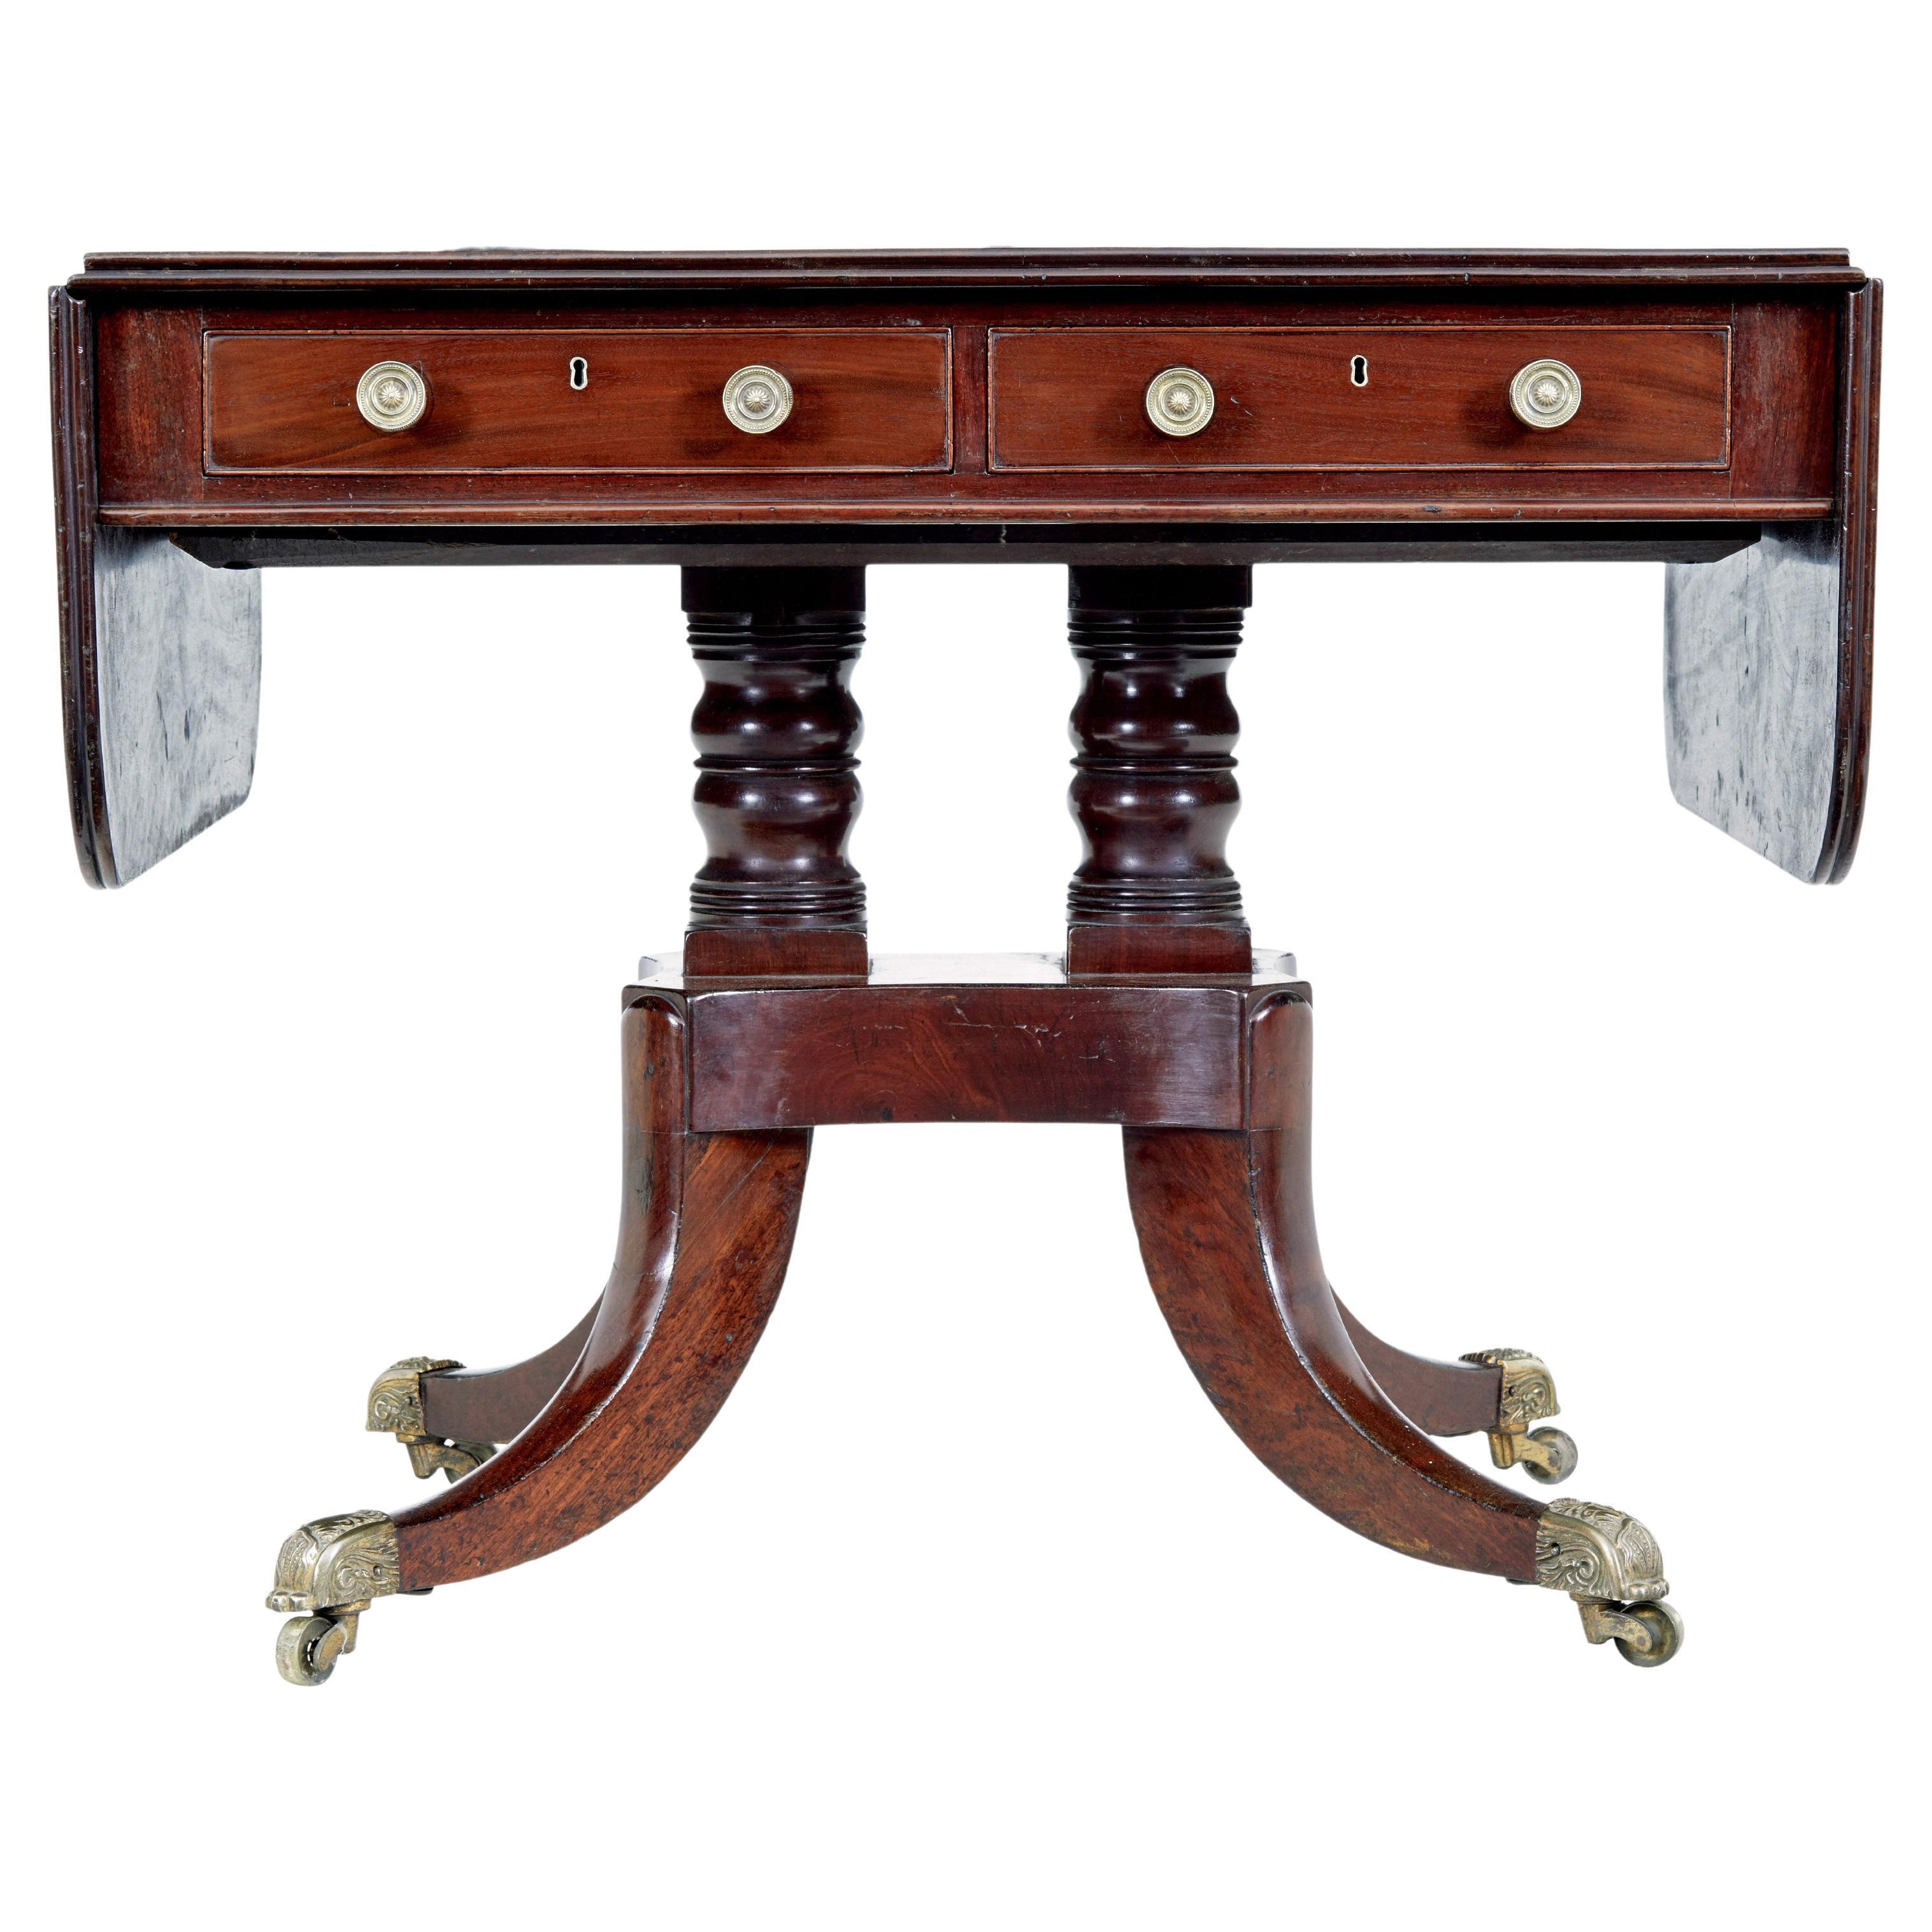 19th century early Victorian mahogany sofa table